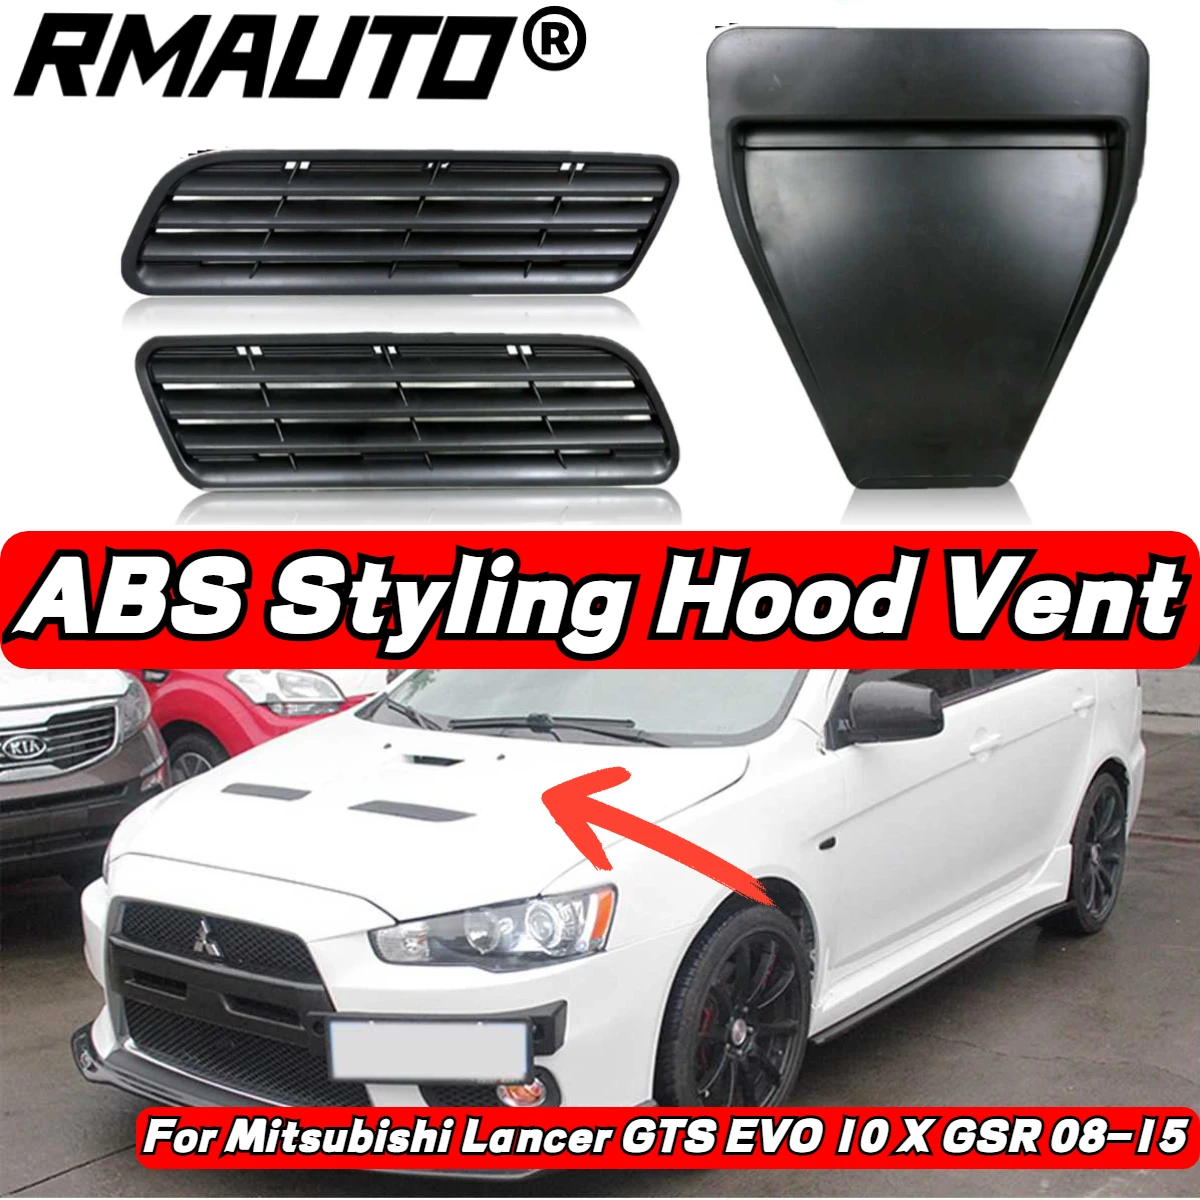 RMAUTO-cubierta de ventilación EVO para capó de coche, embellecedor de entrada de ventilación para Mitsubishi Lancer GTS EVO 10 X GSR 08-15, estilo de coche, 3 uds.